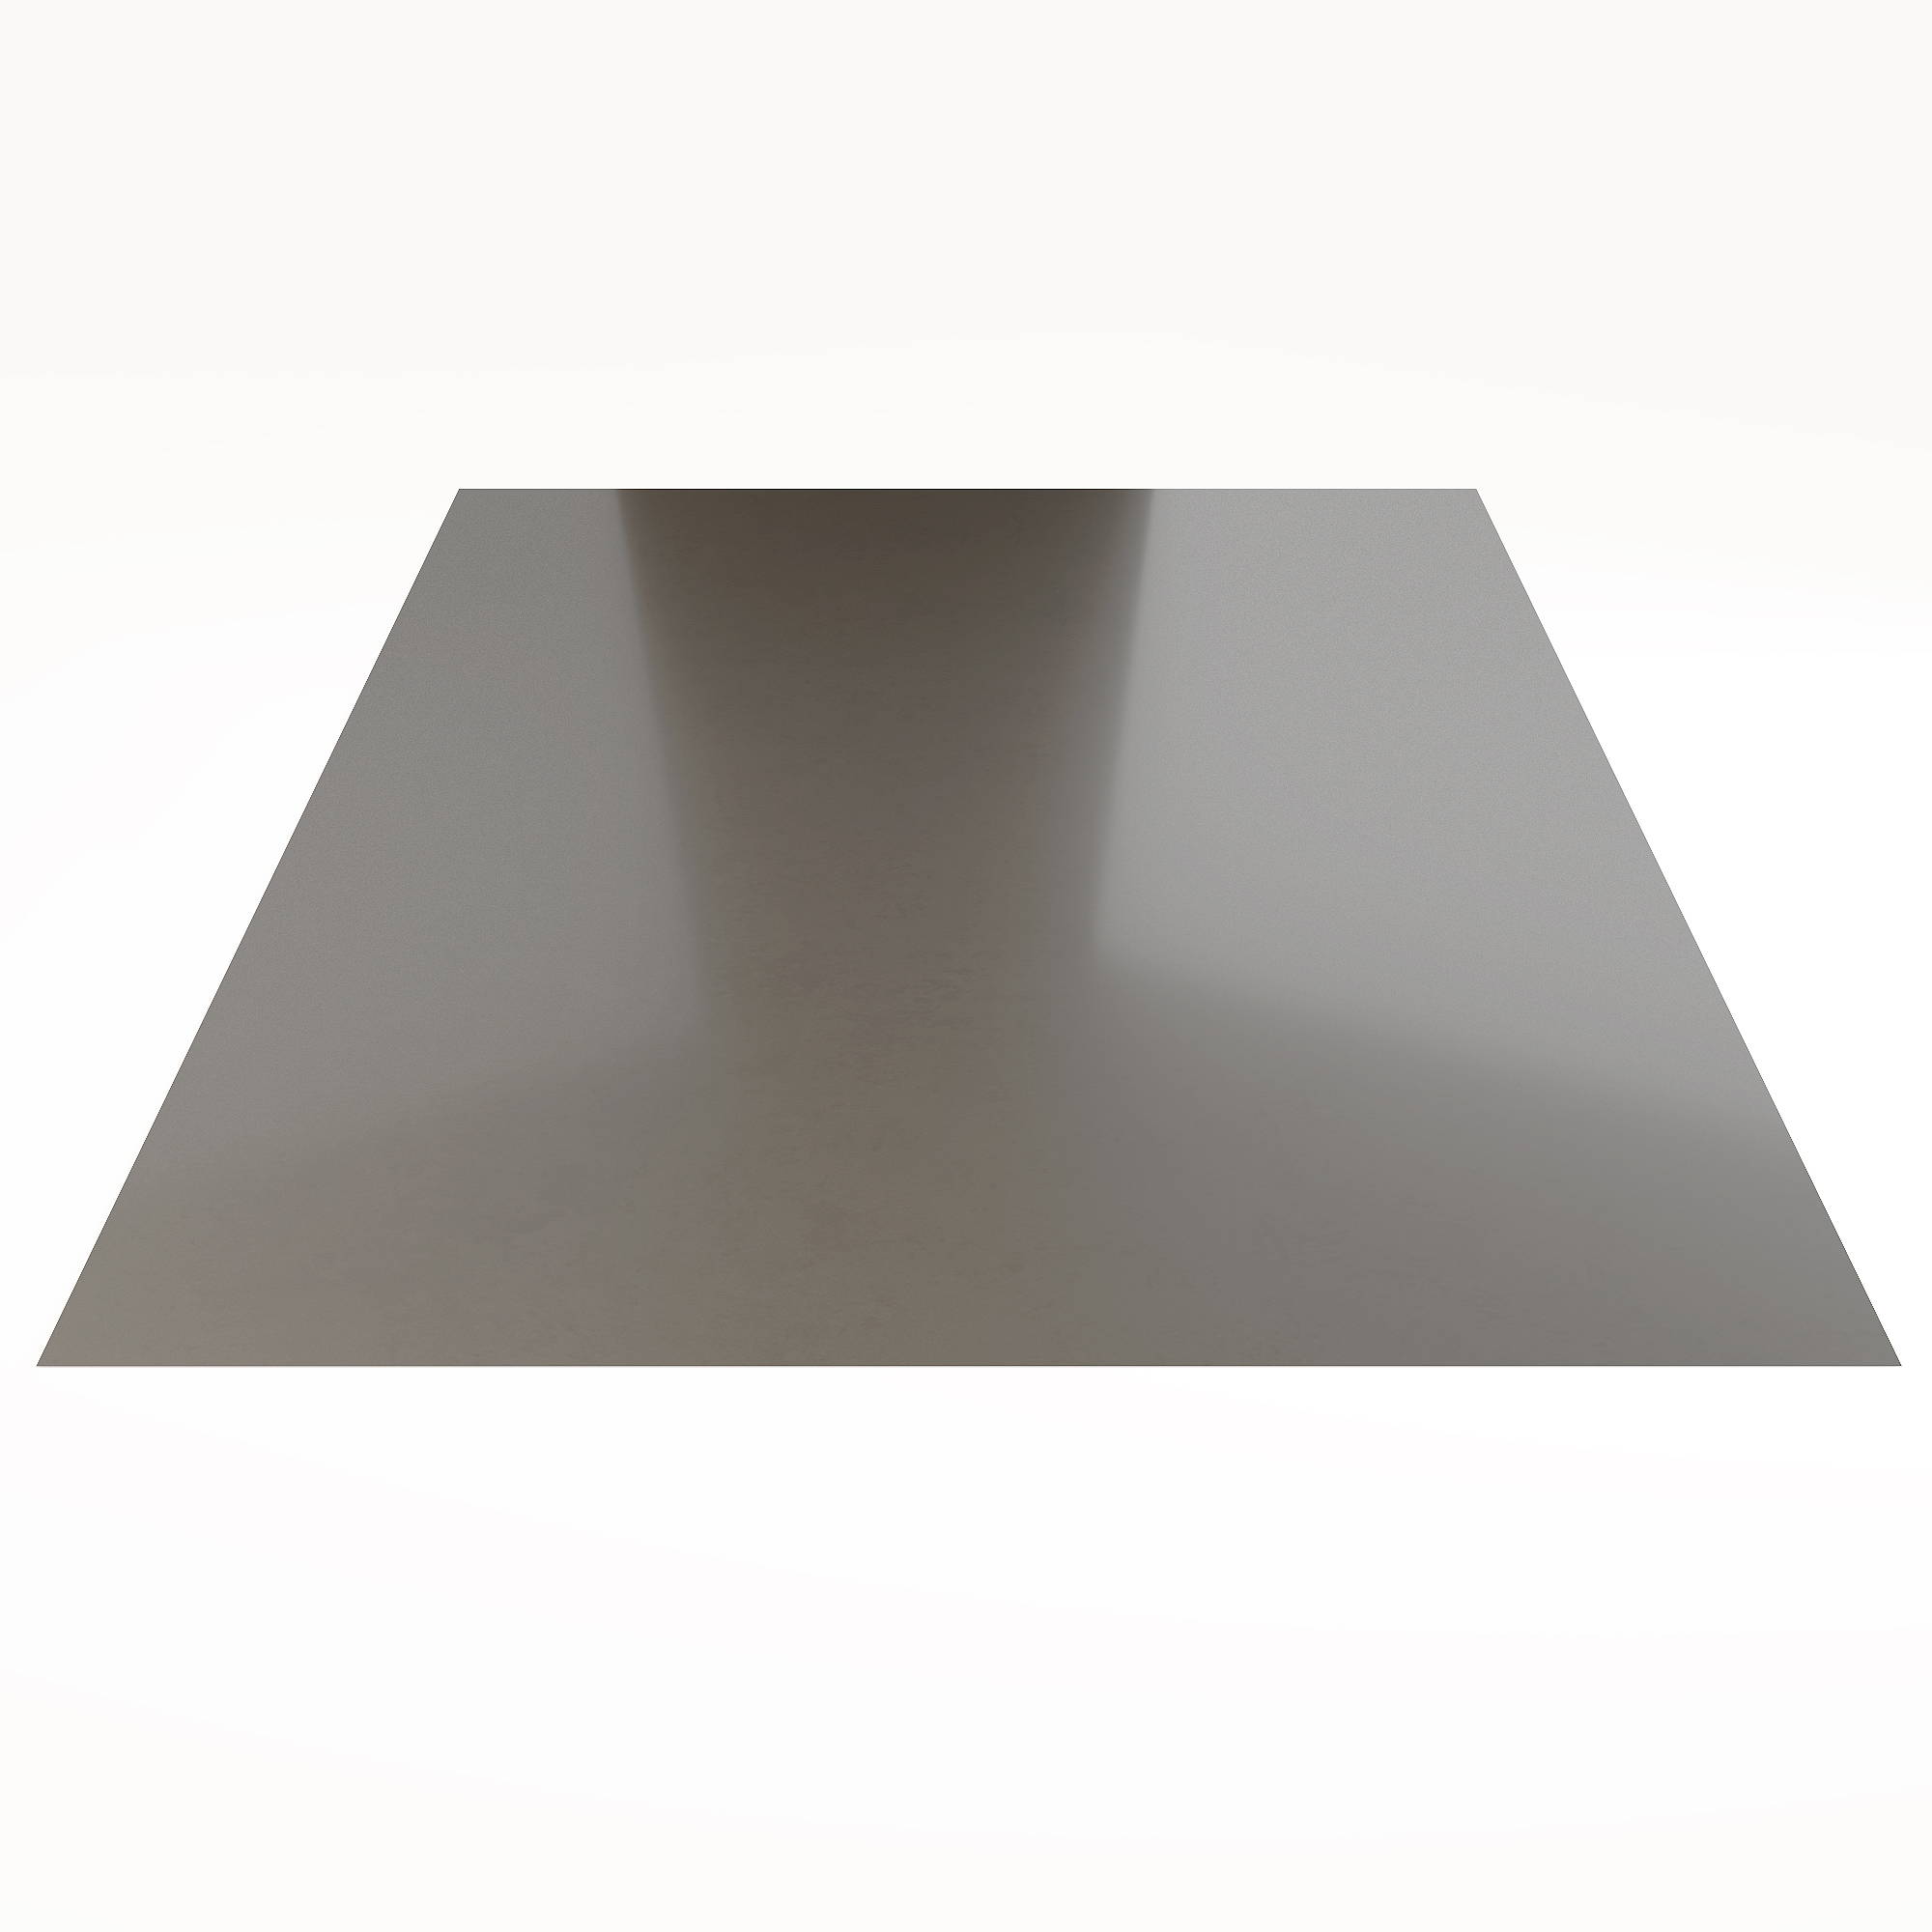 Гладкий лист Гладкий полиэстер RAL 7004 (Серый) 1800*1250*0,4 односторонний ламинированный